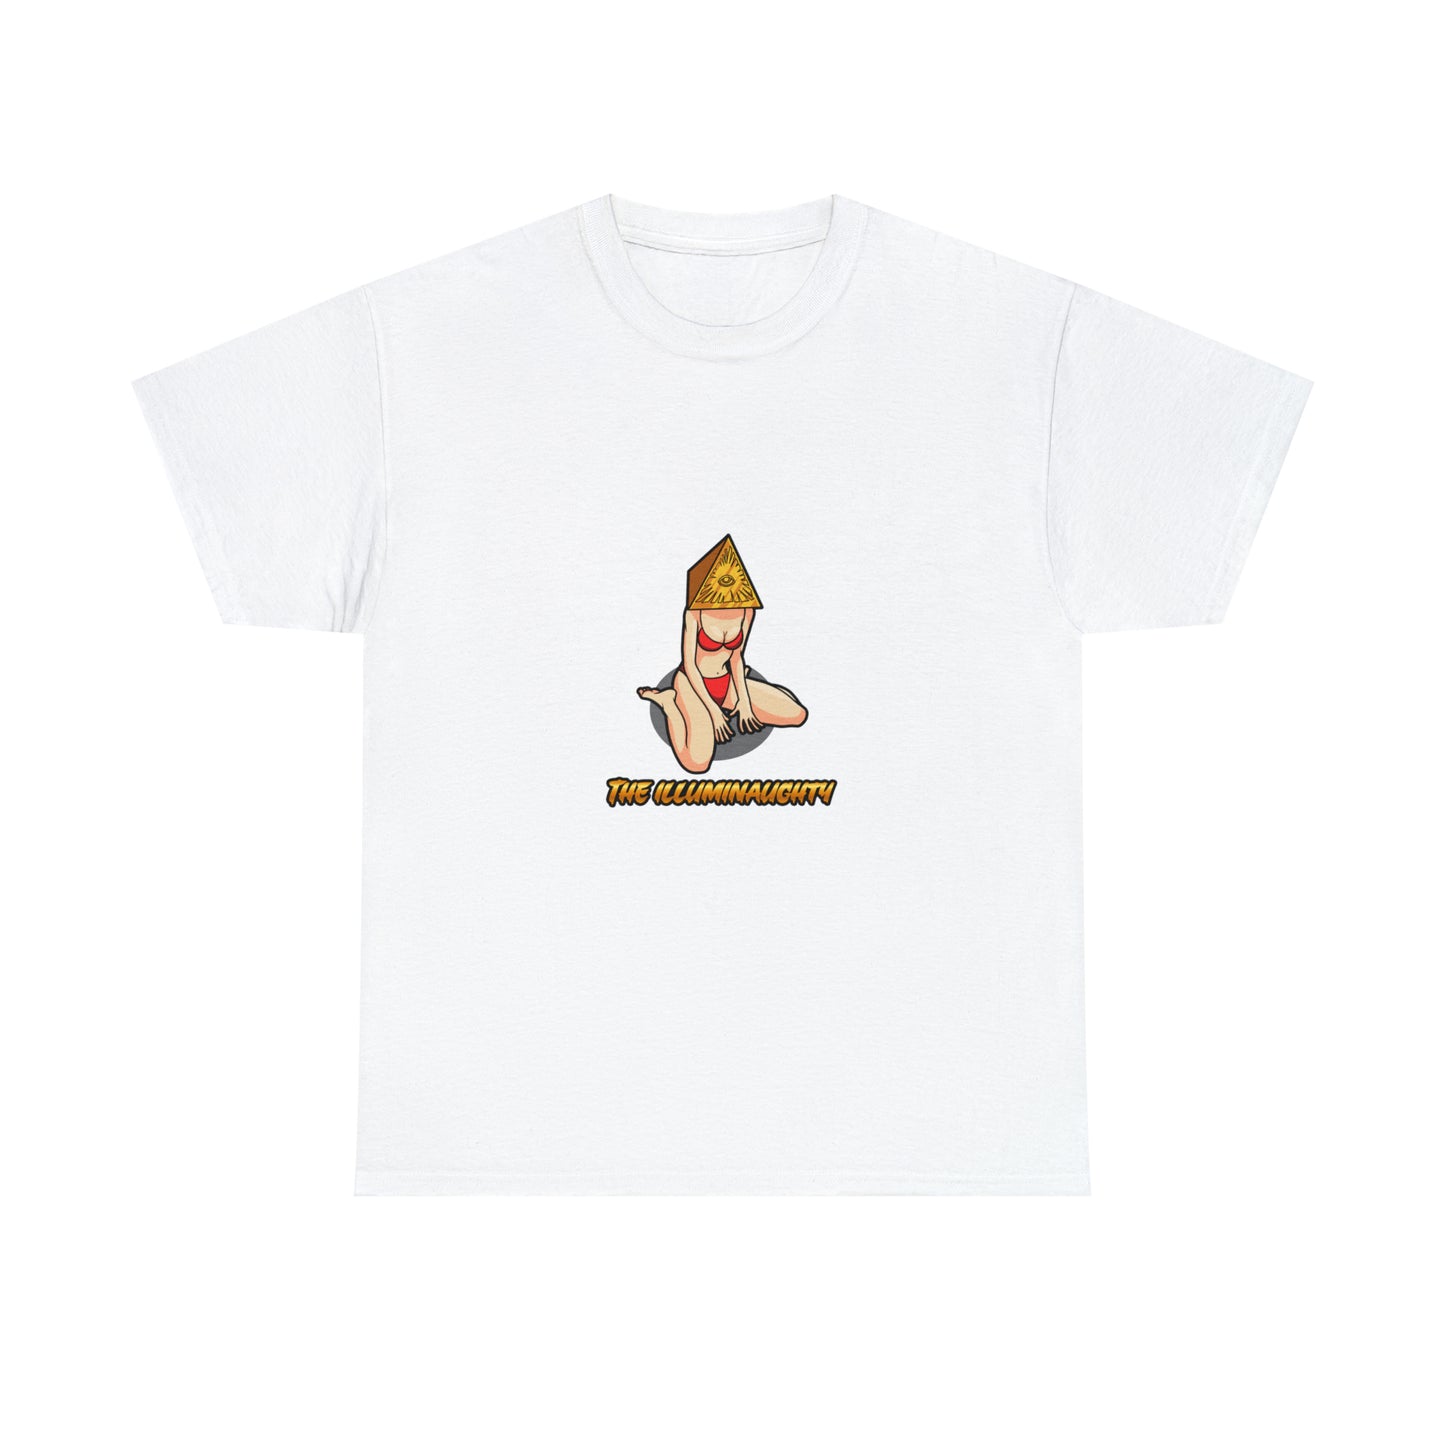 Custom Parody T-shirt, The Illuminaughty design